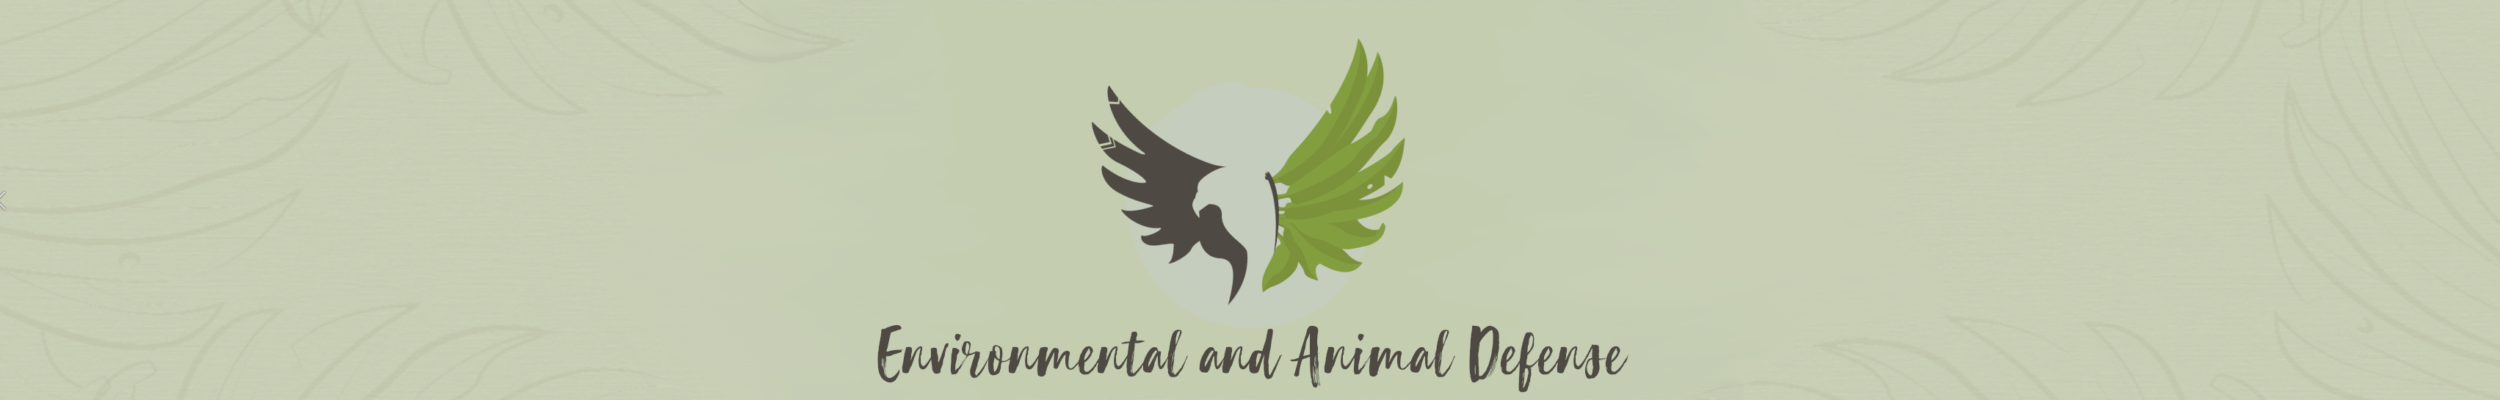 Environmental and Animal Defense